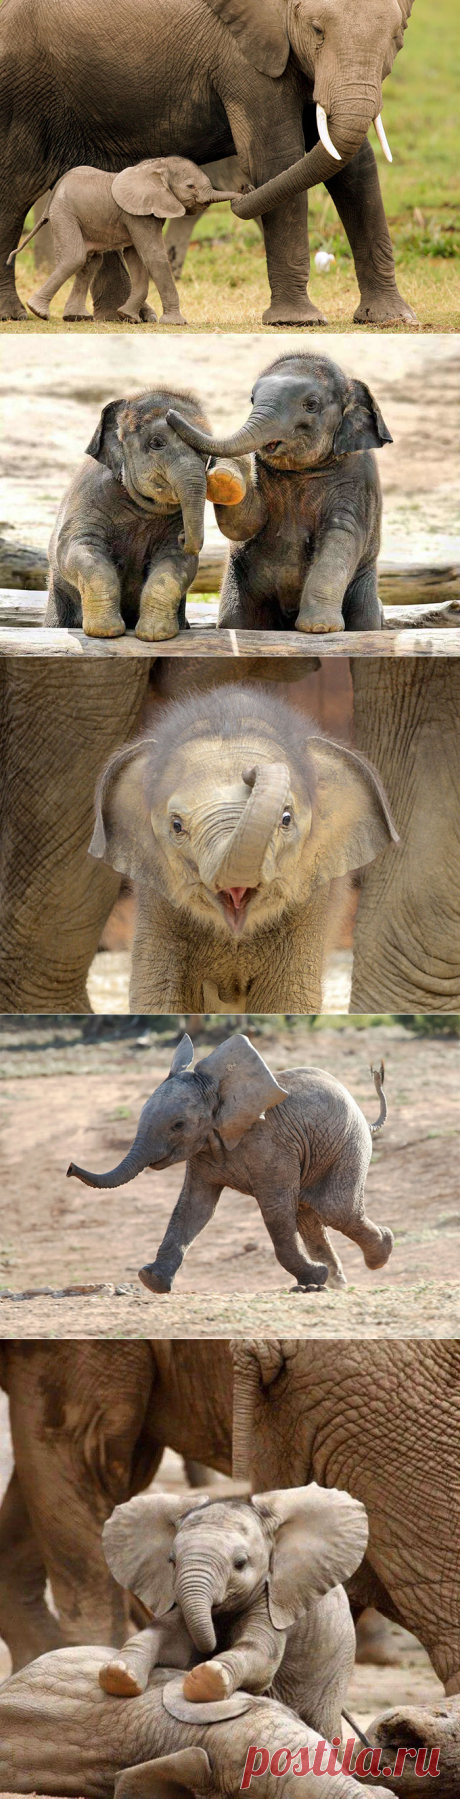 Такие милые слОники - Детеныши слонов, которые заставят Вас улыбнуться..